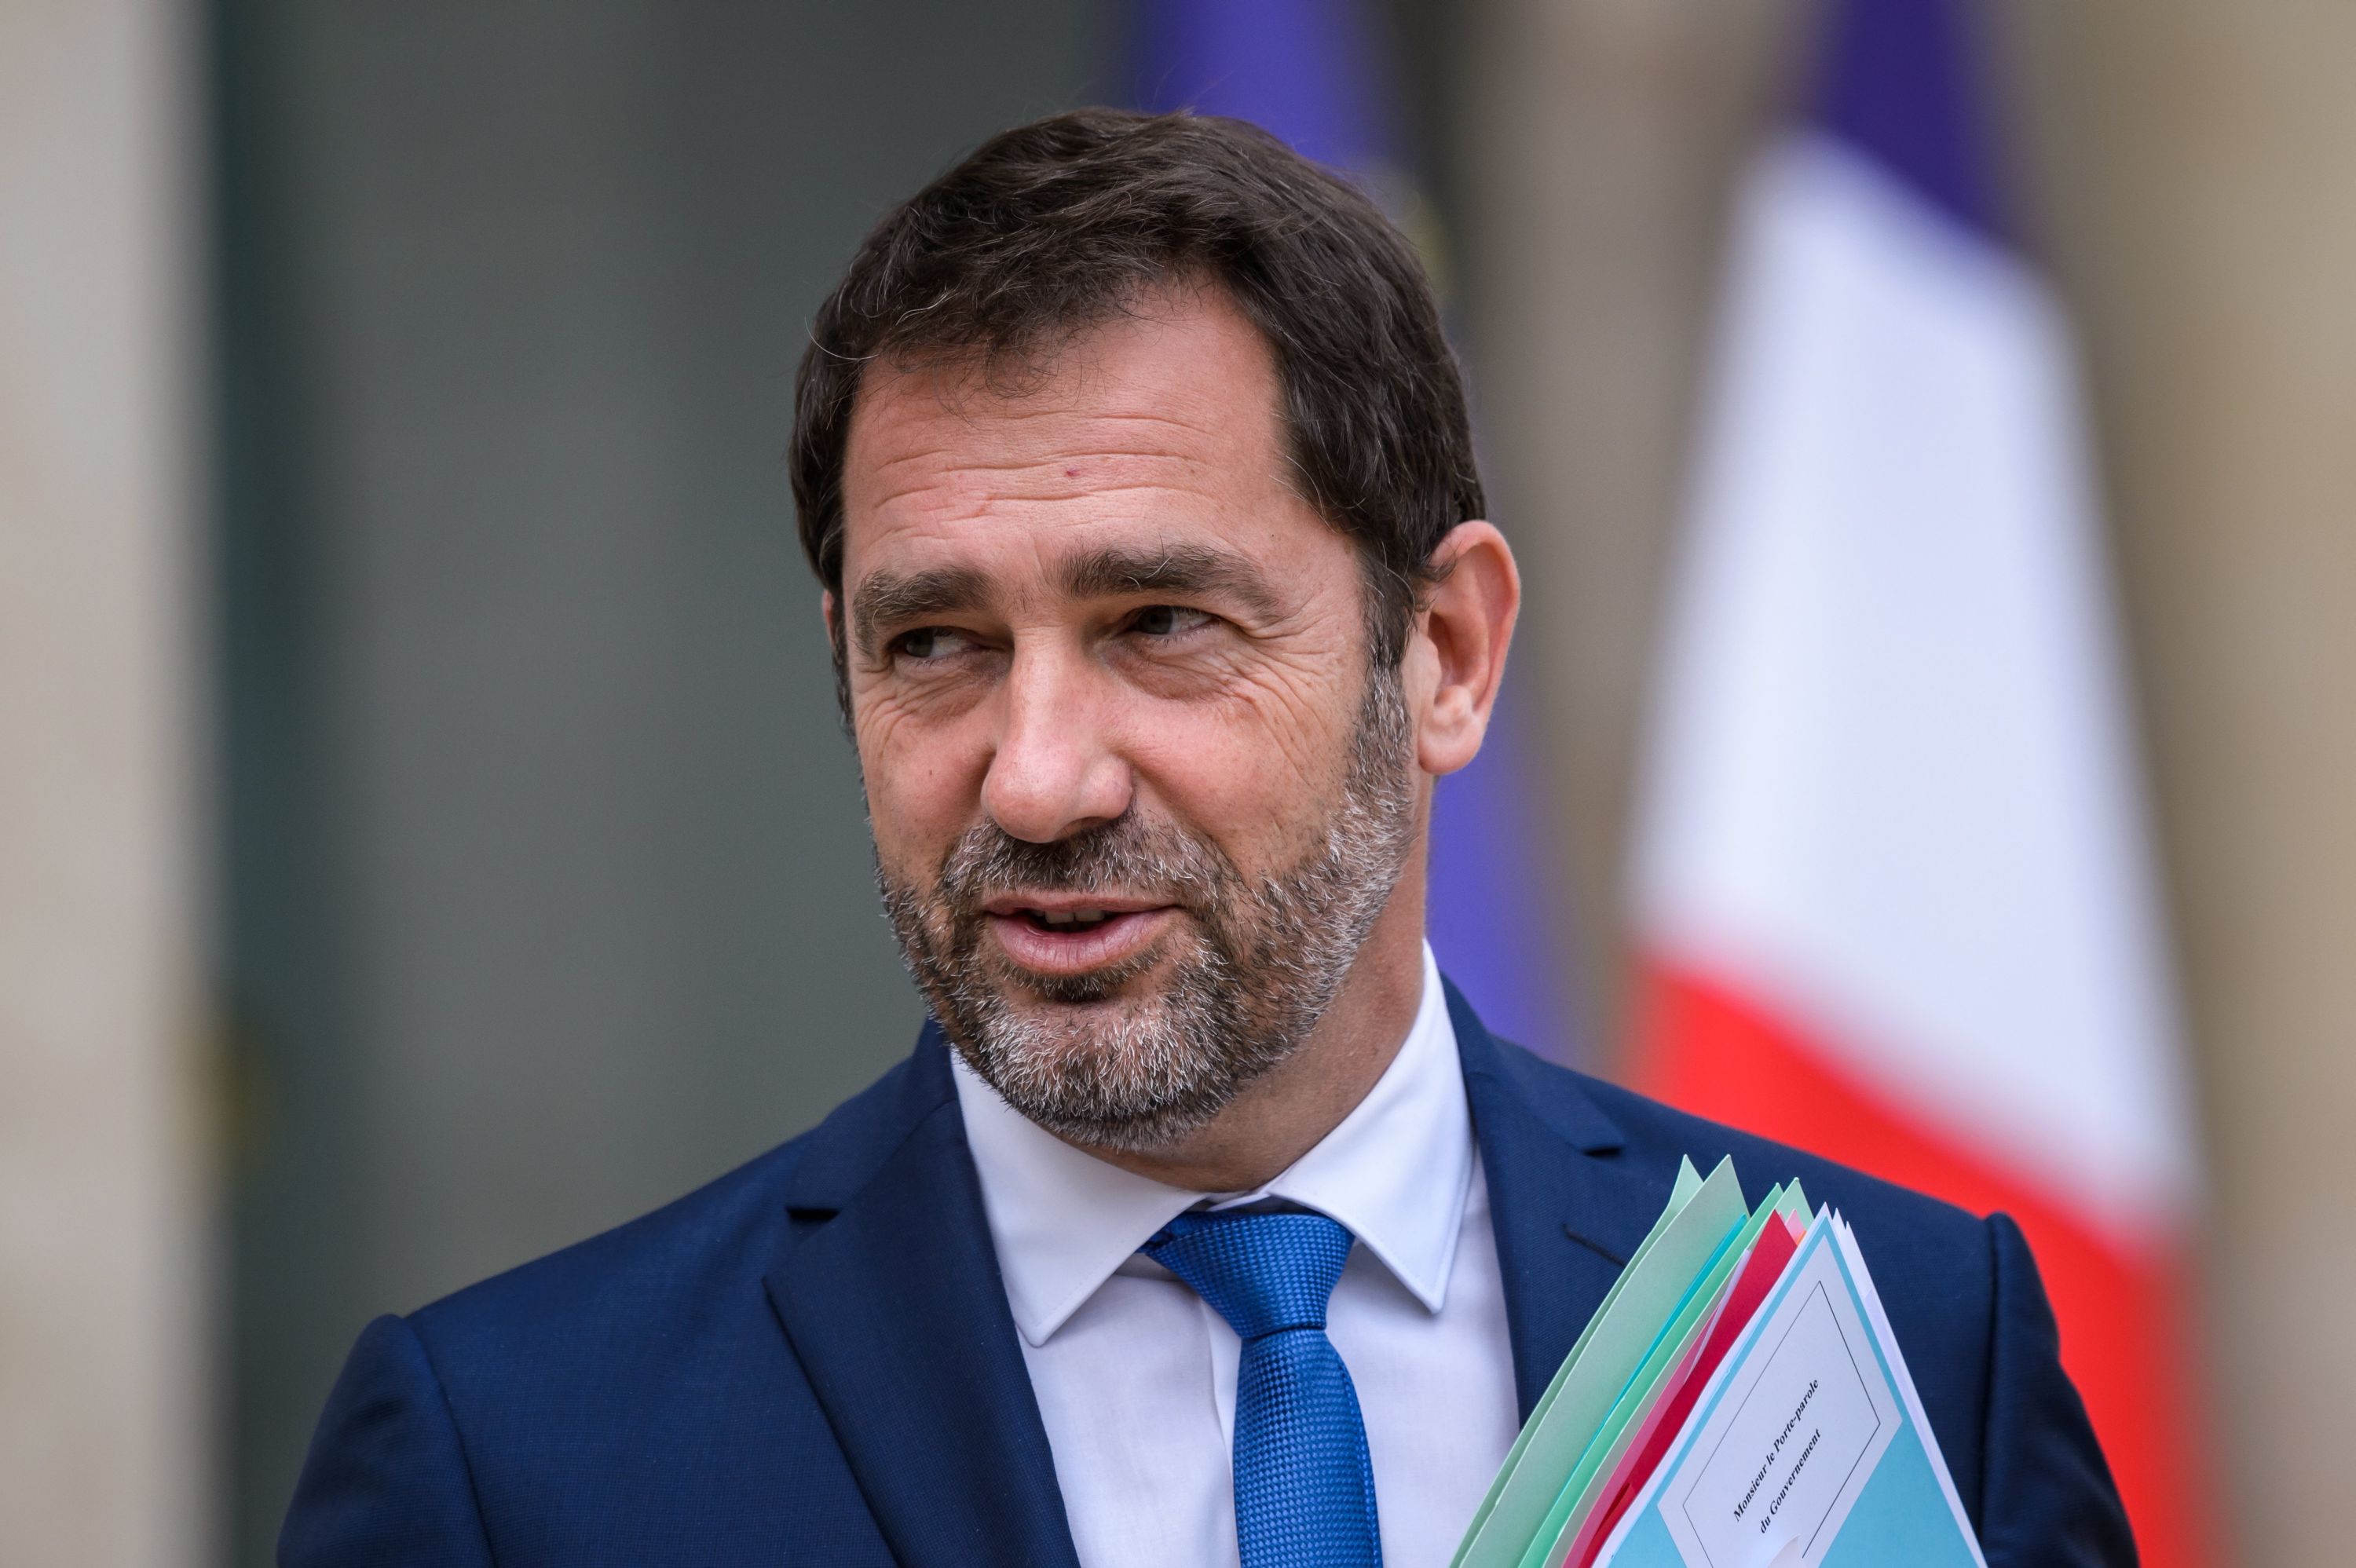 Christophe Castaner francia kormányszóvivő, amint elhagyja az Élysée-palotát egy heti kabinetülés után, 2017. augusztus 9-én. EPA/CHRISTOPHE PETIT TESSON